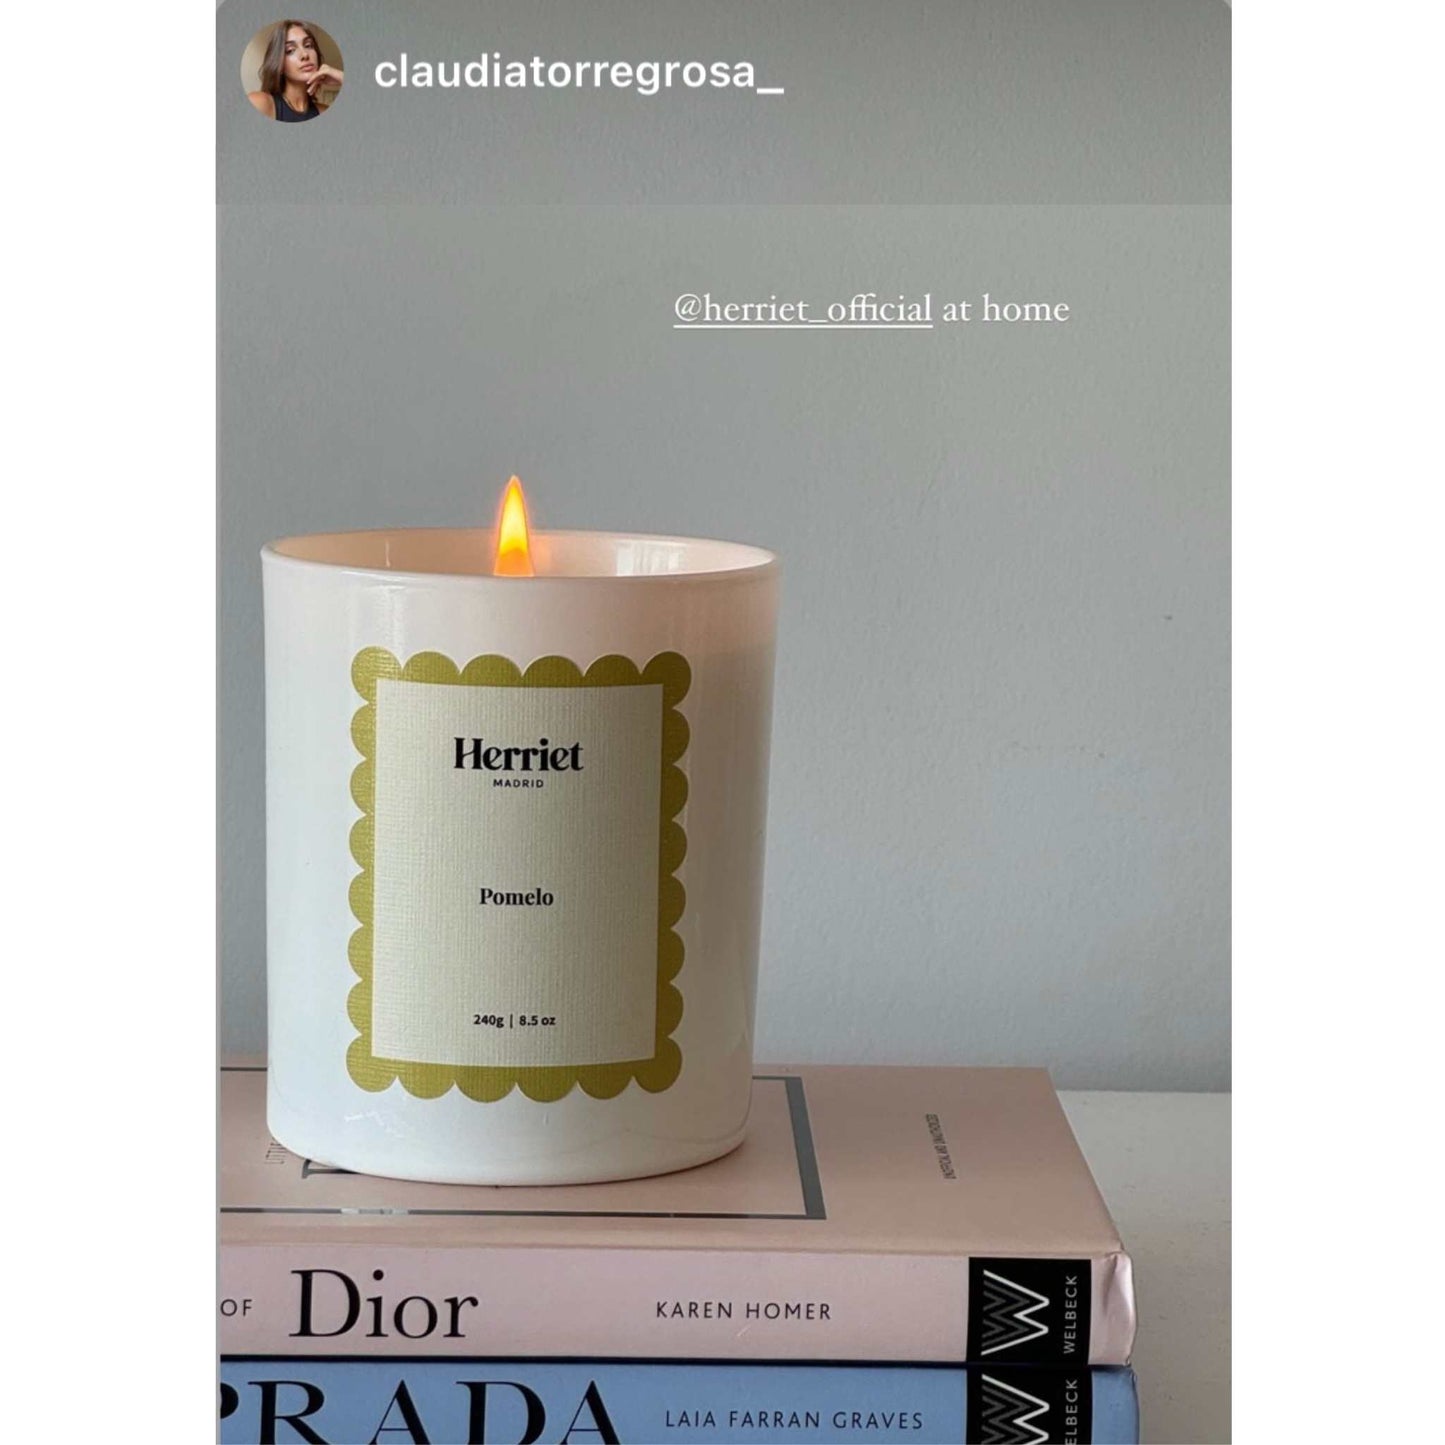 claudia torregrosa con vela pomelo de herriet encima de libros de Dior y Prada